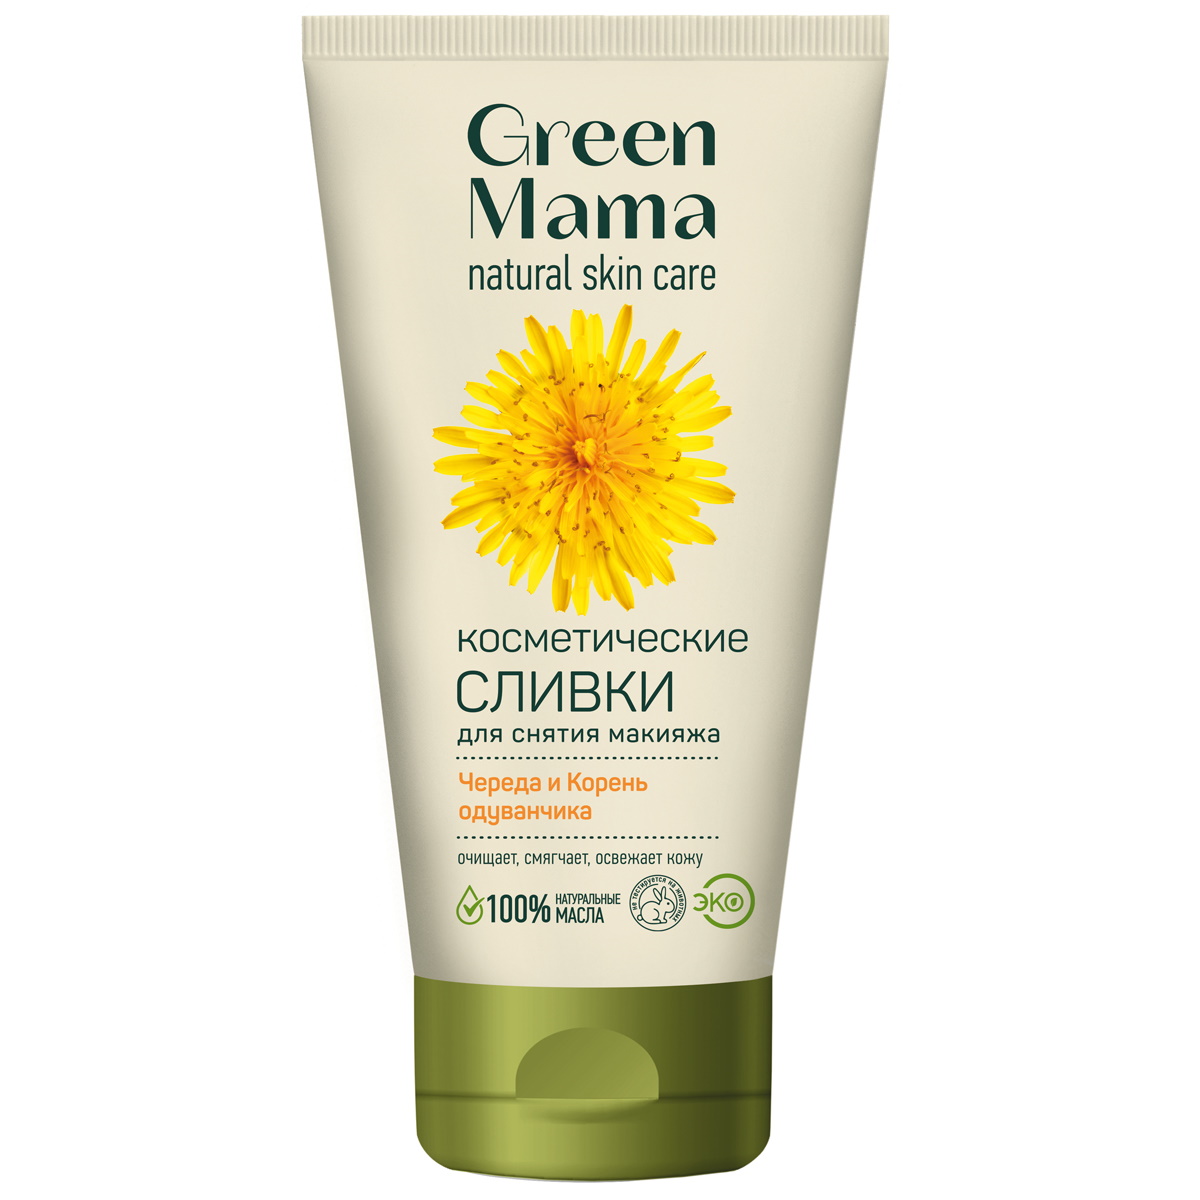 Сливки косметические для снятия макияжа GREEN MAMA, 170 мл